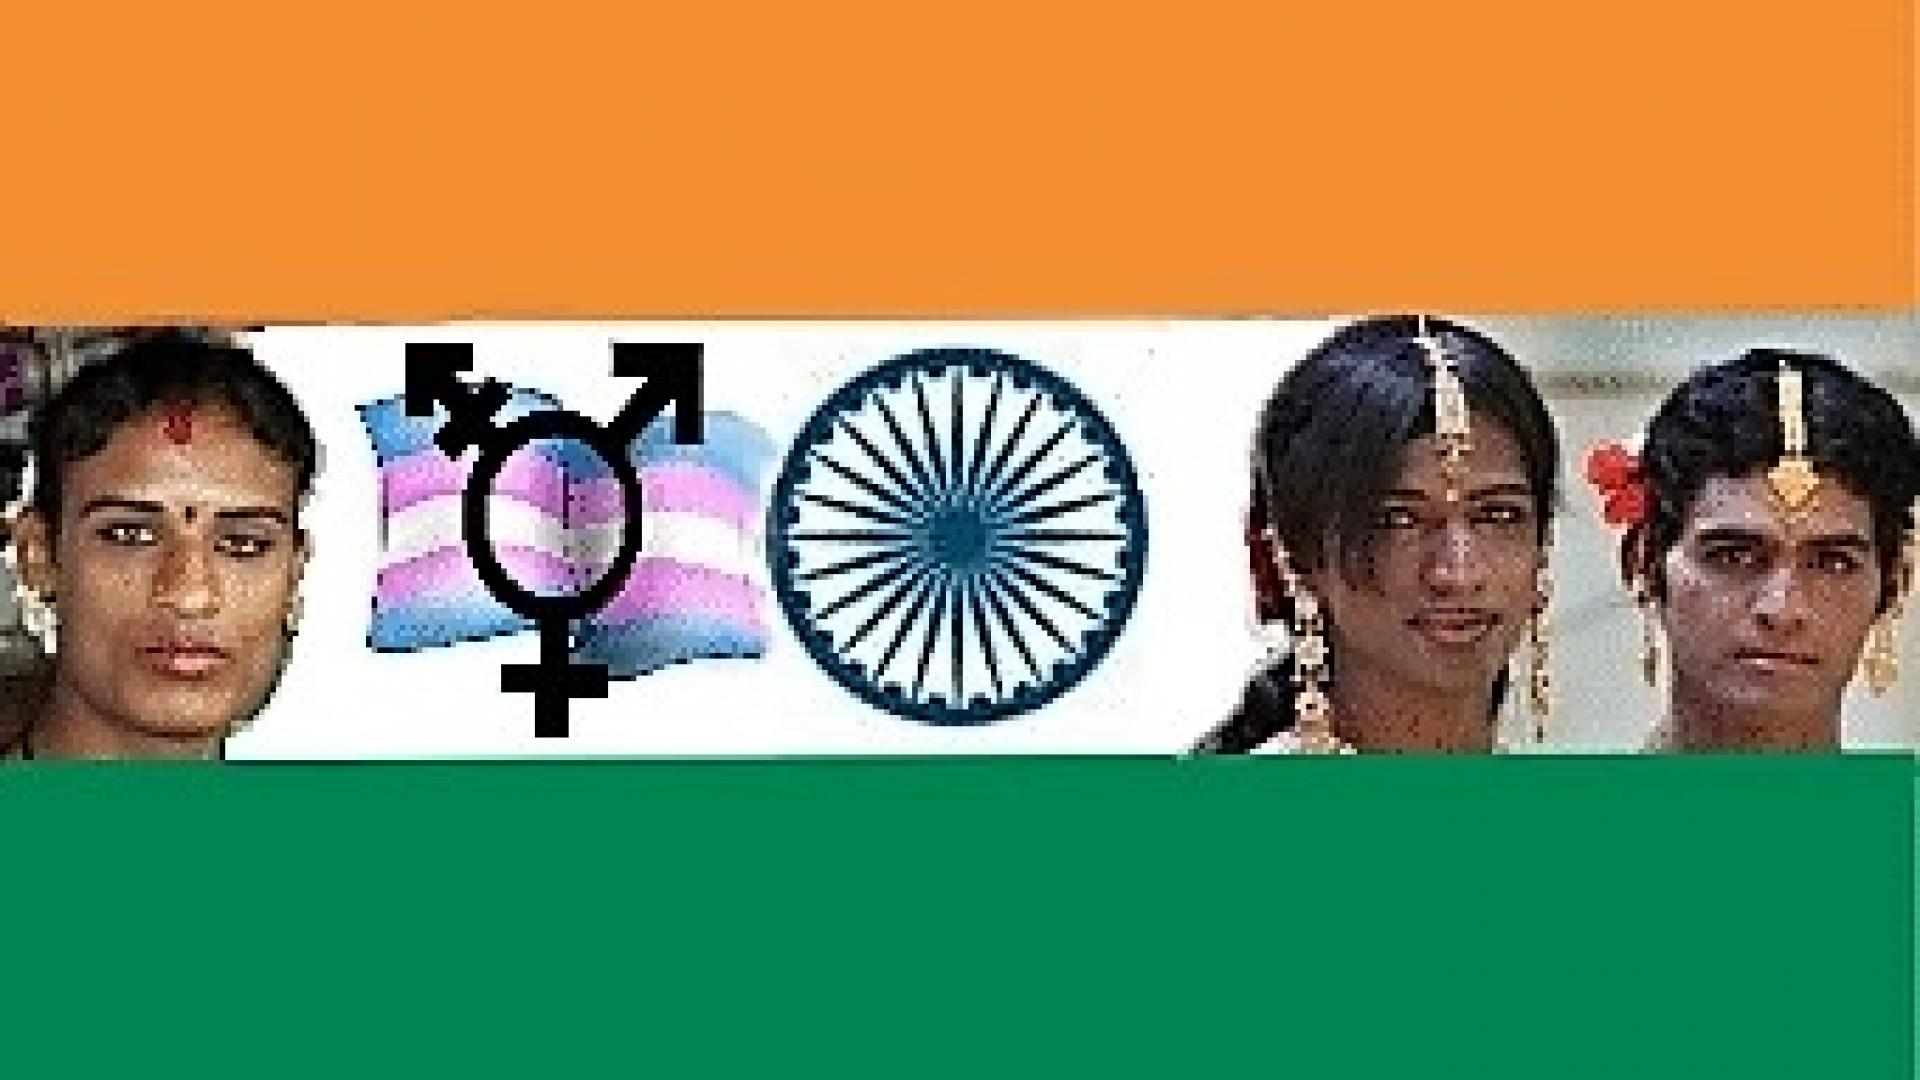 Indiase vlag met daarin de transgendervlag en enkele hijra's zichtbaar